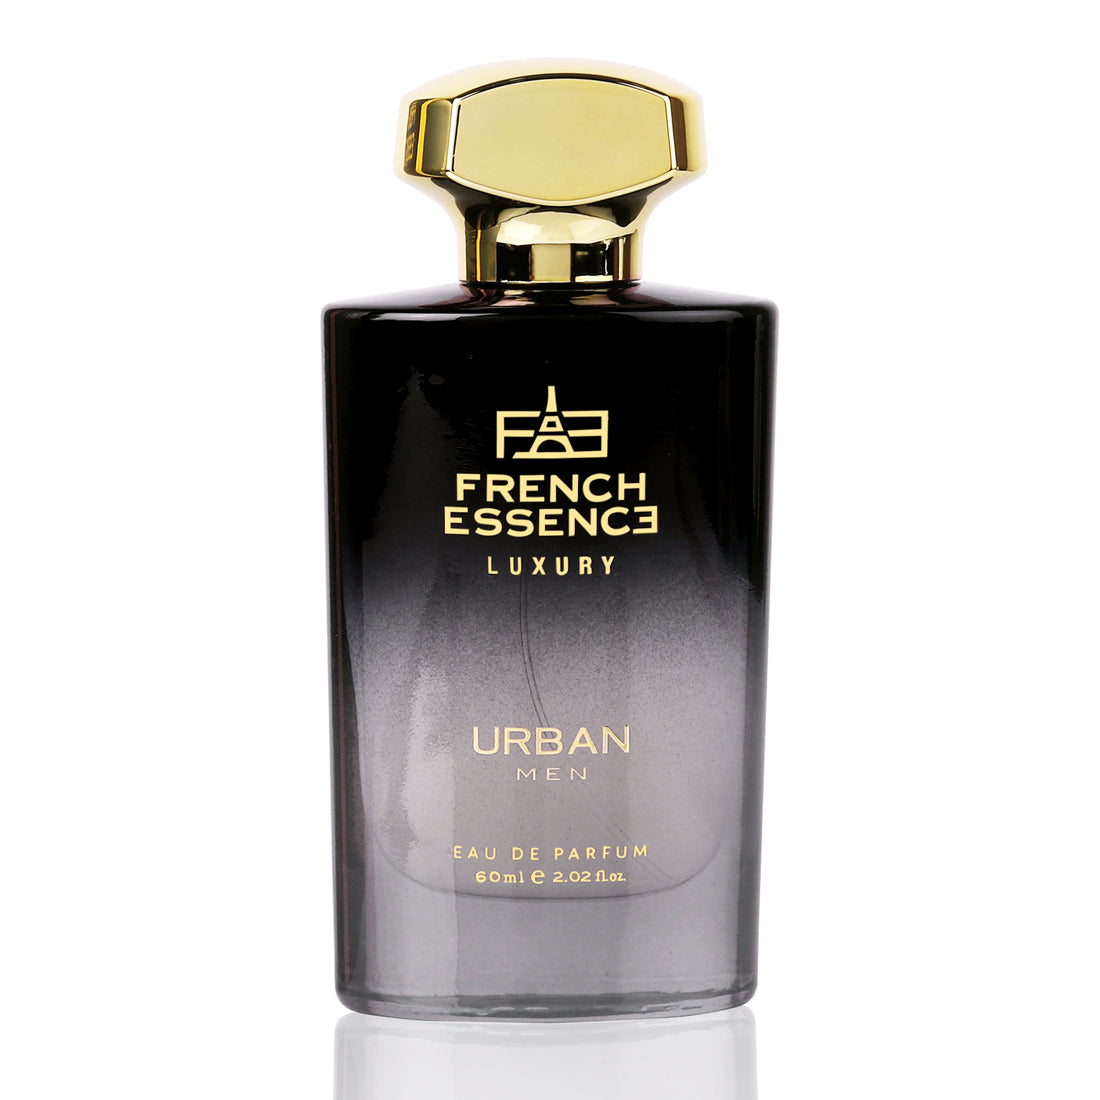 Urban Men Spicy, Musky & Woody Perfume